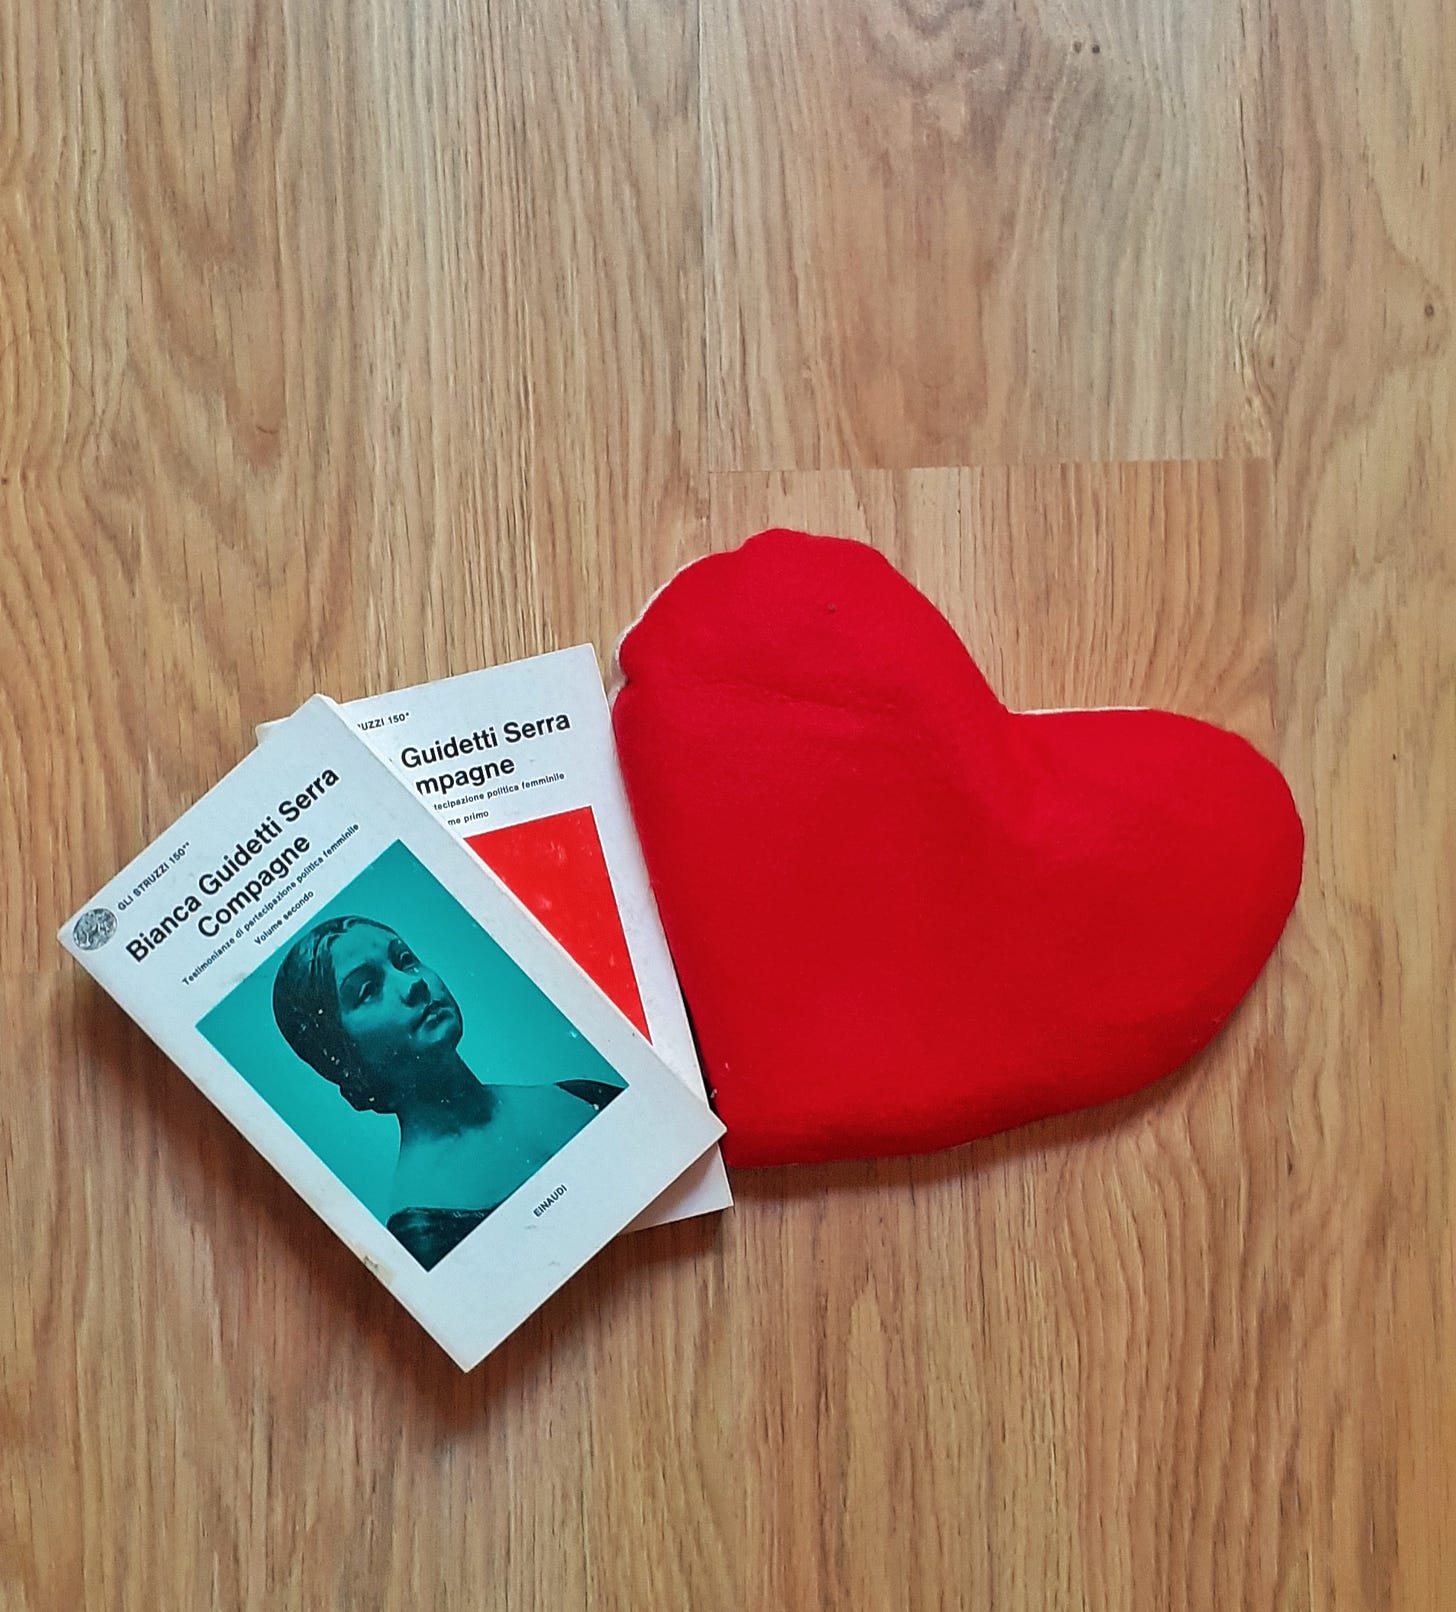 Su un pavimento in parquet sono poggiati un cuscino a forma di cuore rosso e due libri Einaudi, collana Gli Struzzi: sono i due volumi di Compagne, di Bianca Guidetti Serra.